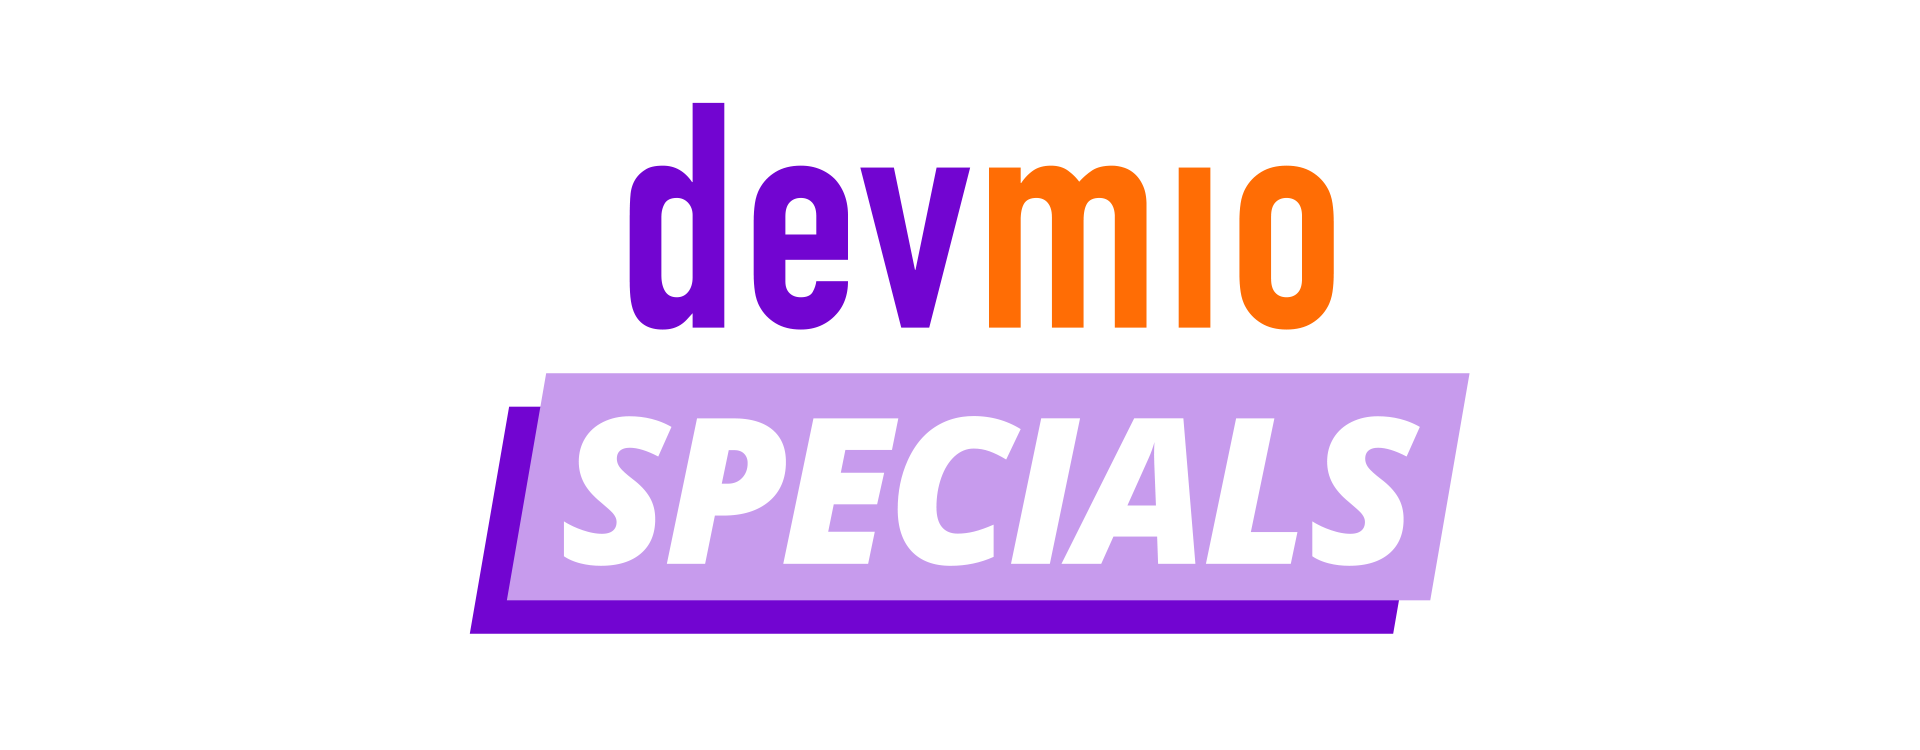 devmio Specials